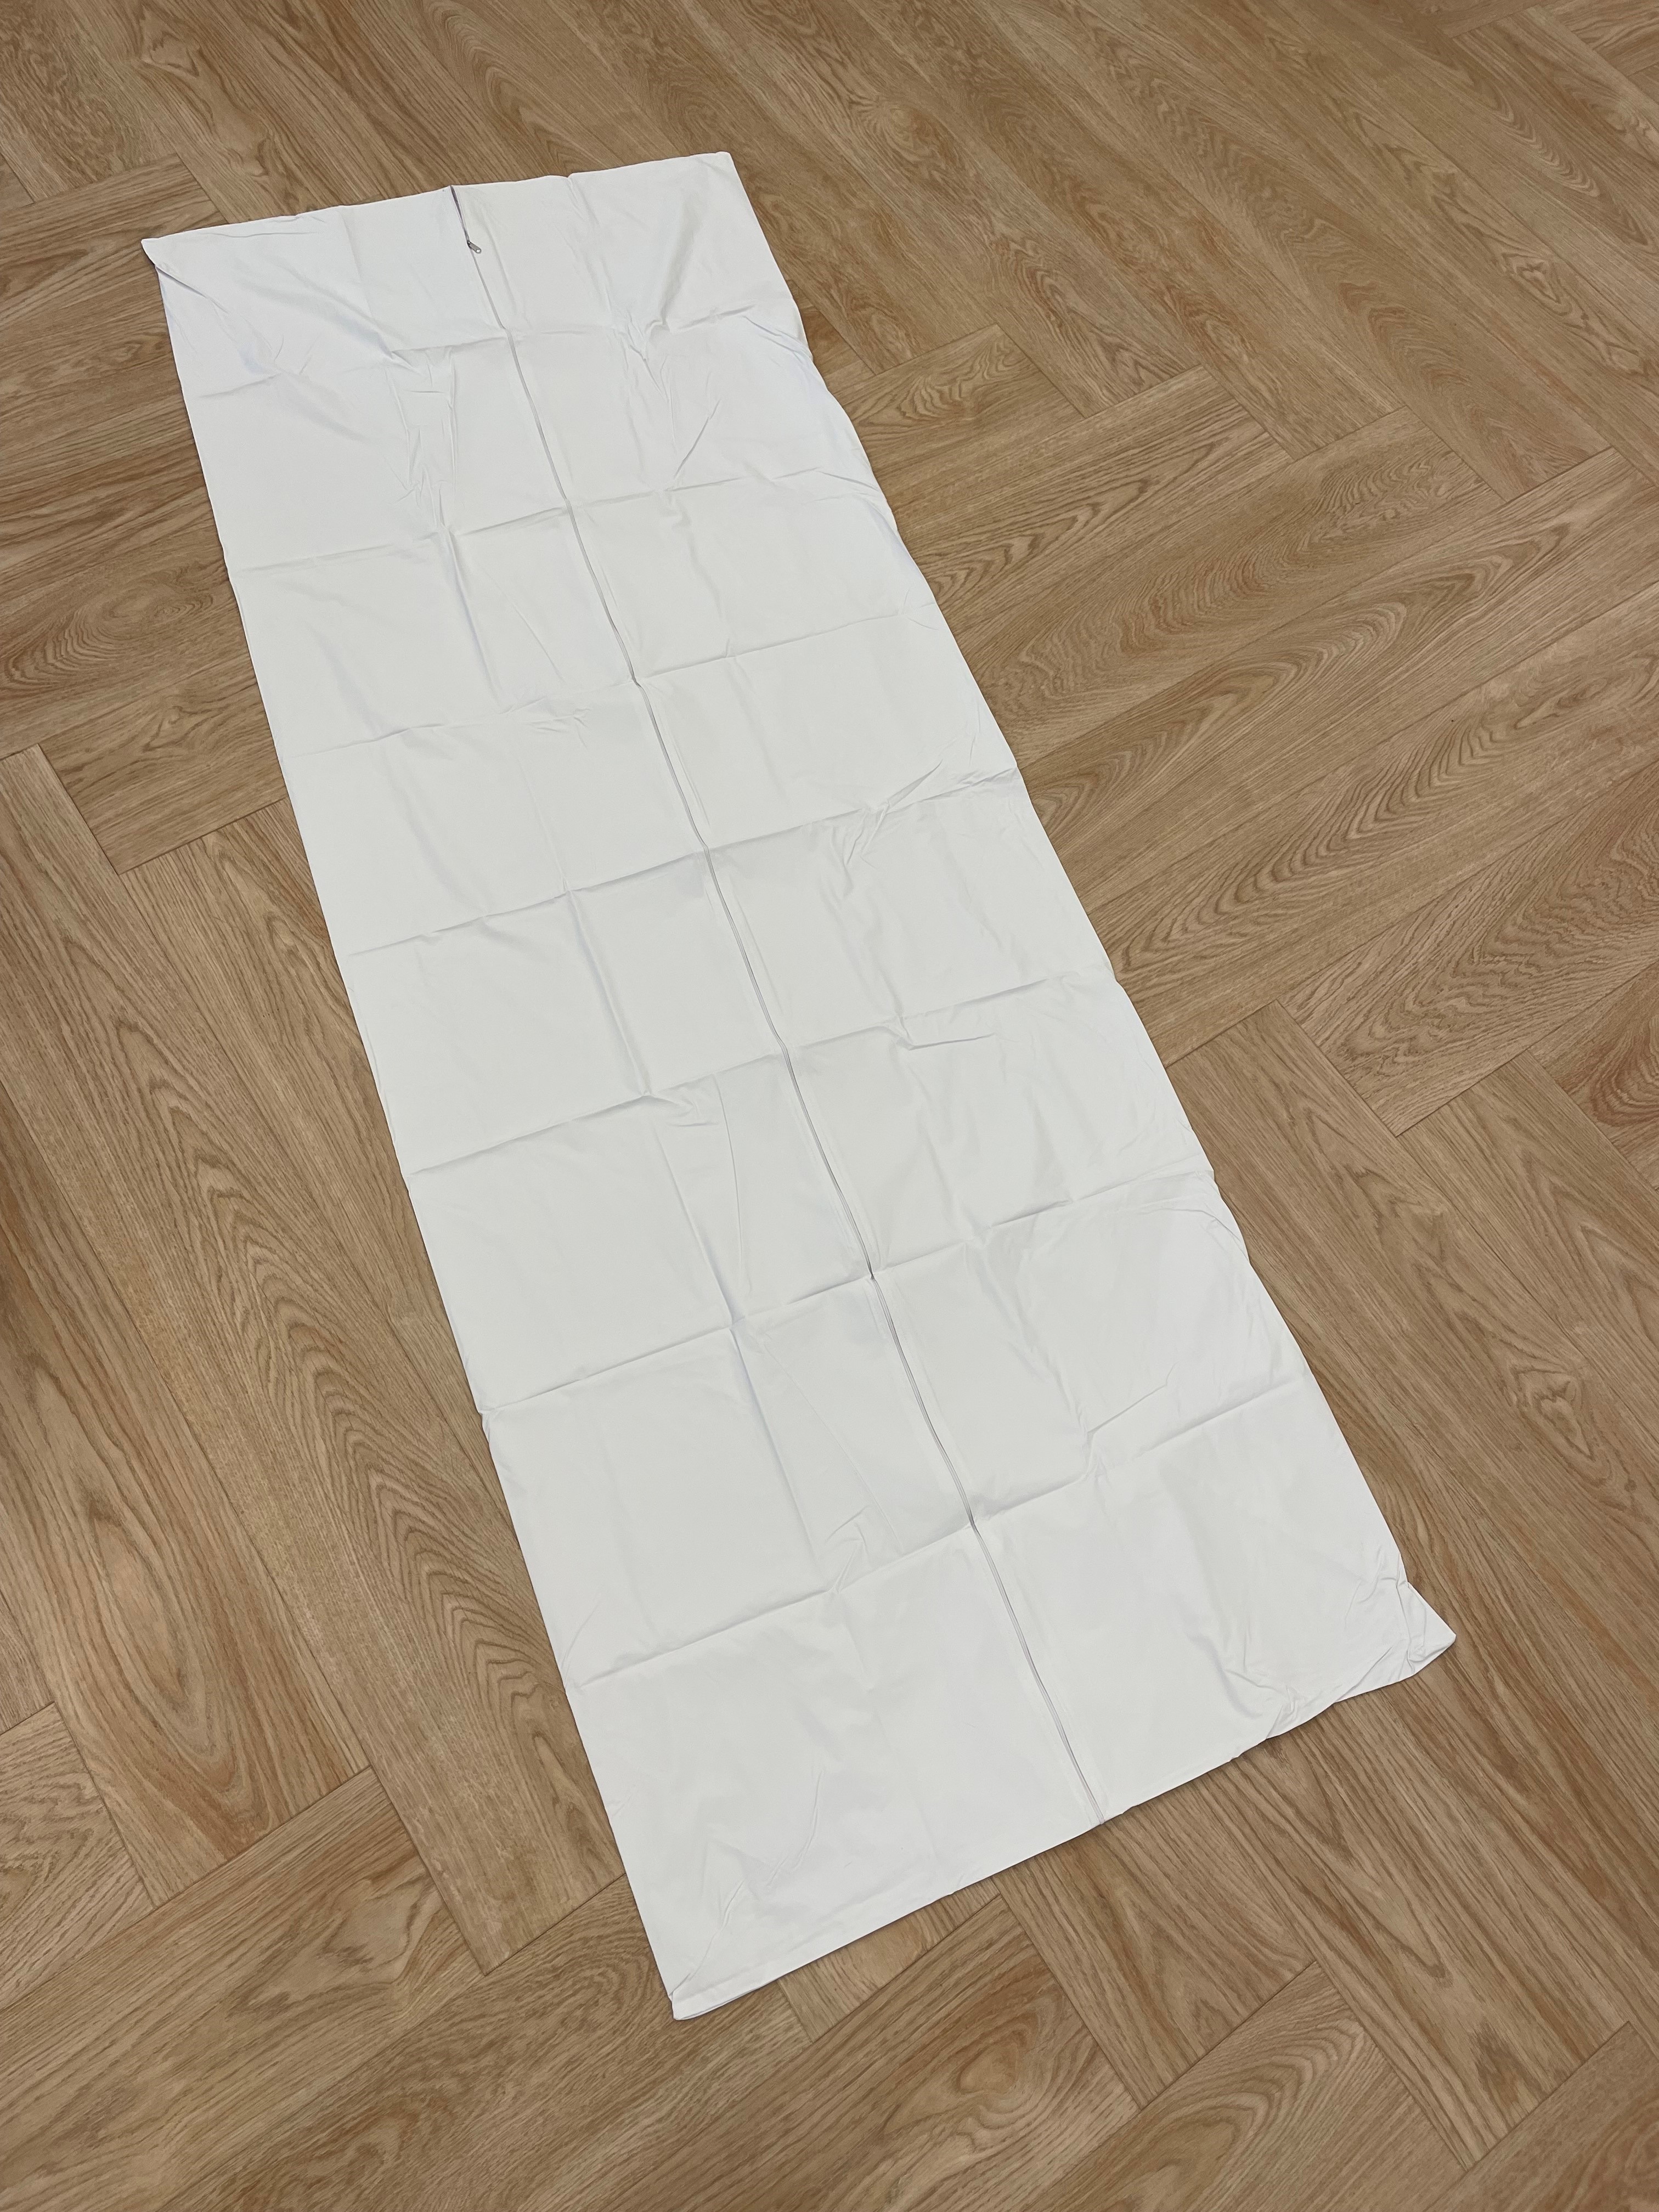 BODY-BAG-WH Romed Leichensack, Weiß, ohne Griffe, 220x80 cm, pro Stück in einem Beutel, 20 Stück im Karton.